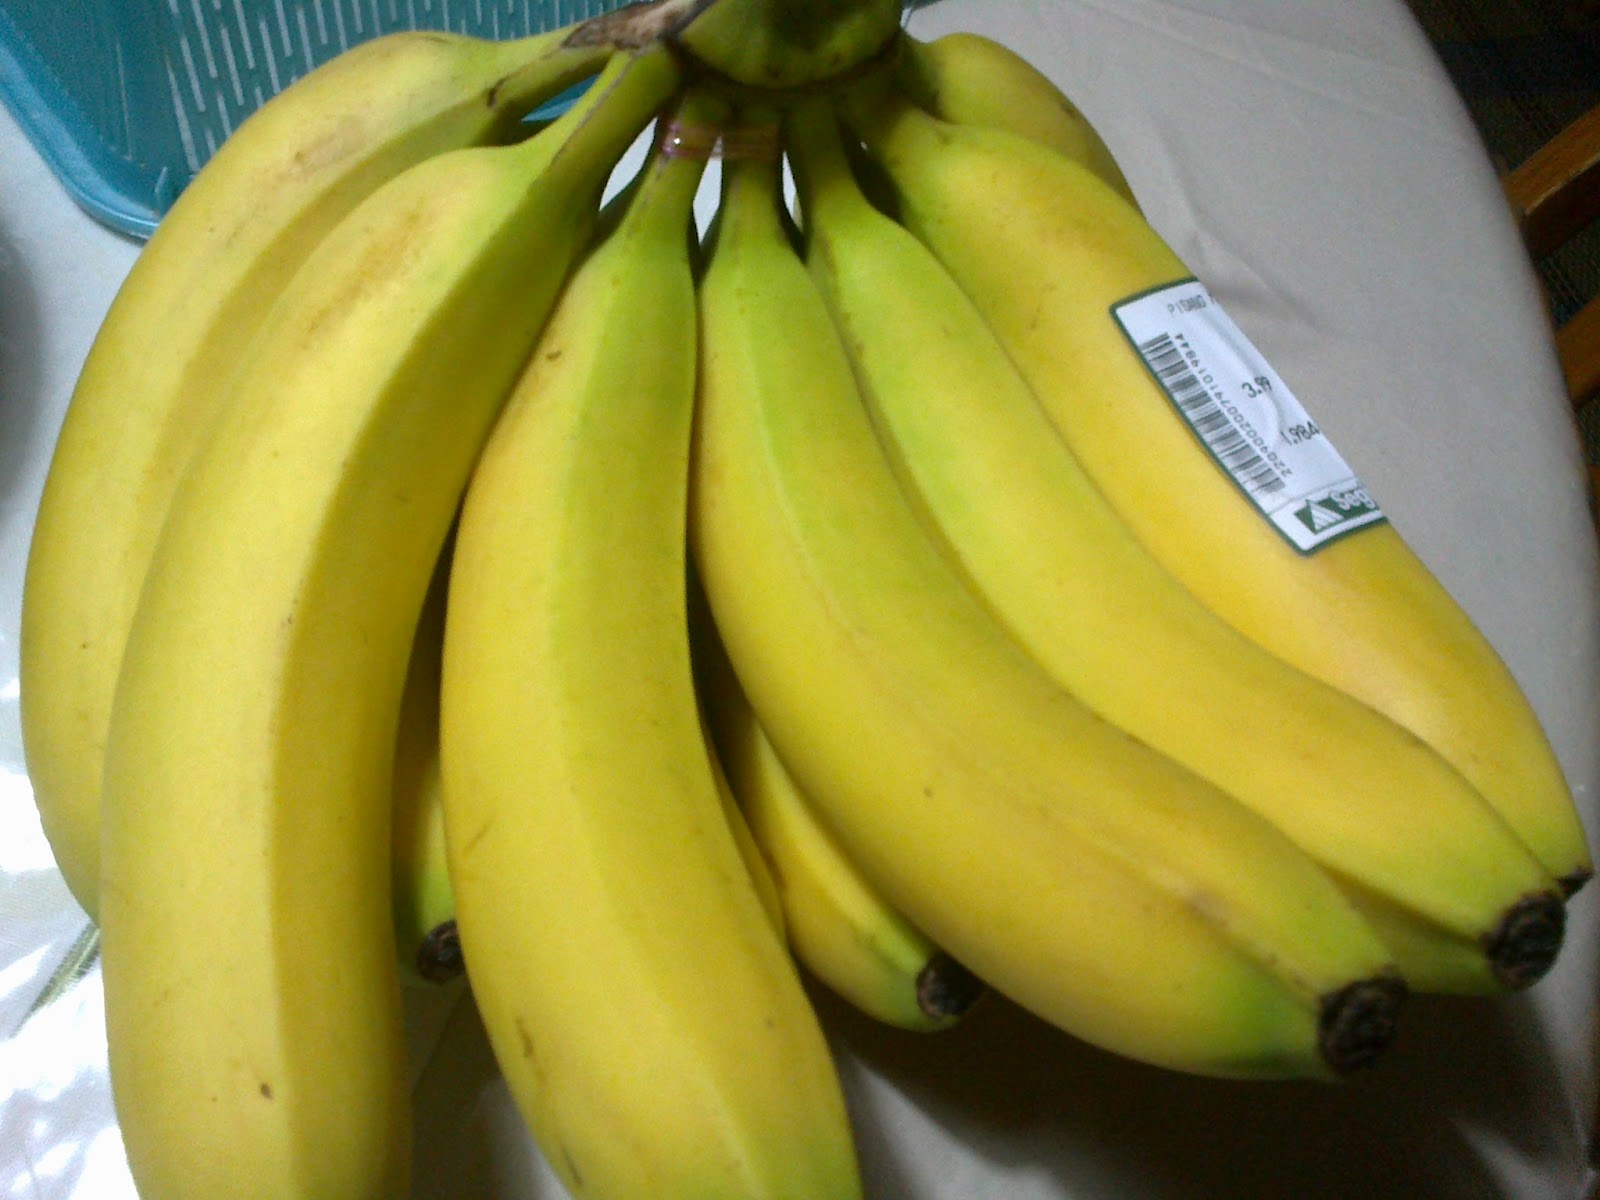 Cinnamon.com: Makan pisang boleh elak kanser dan 